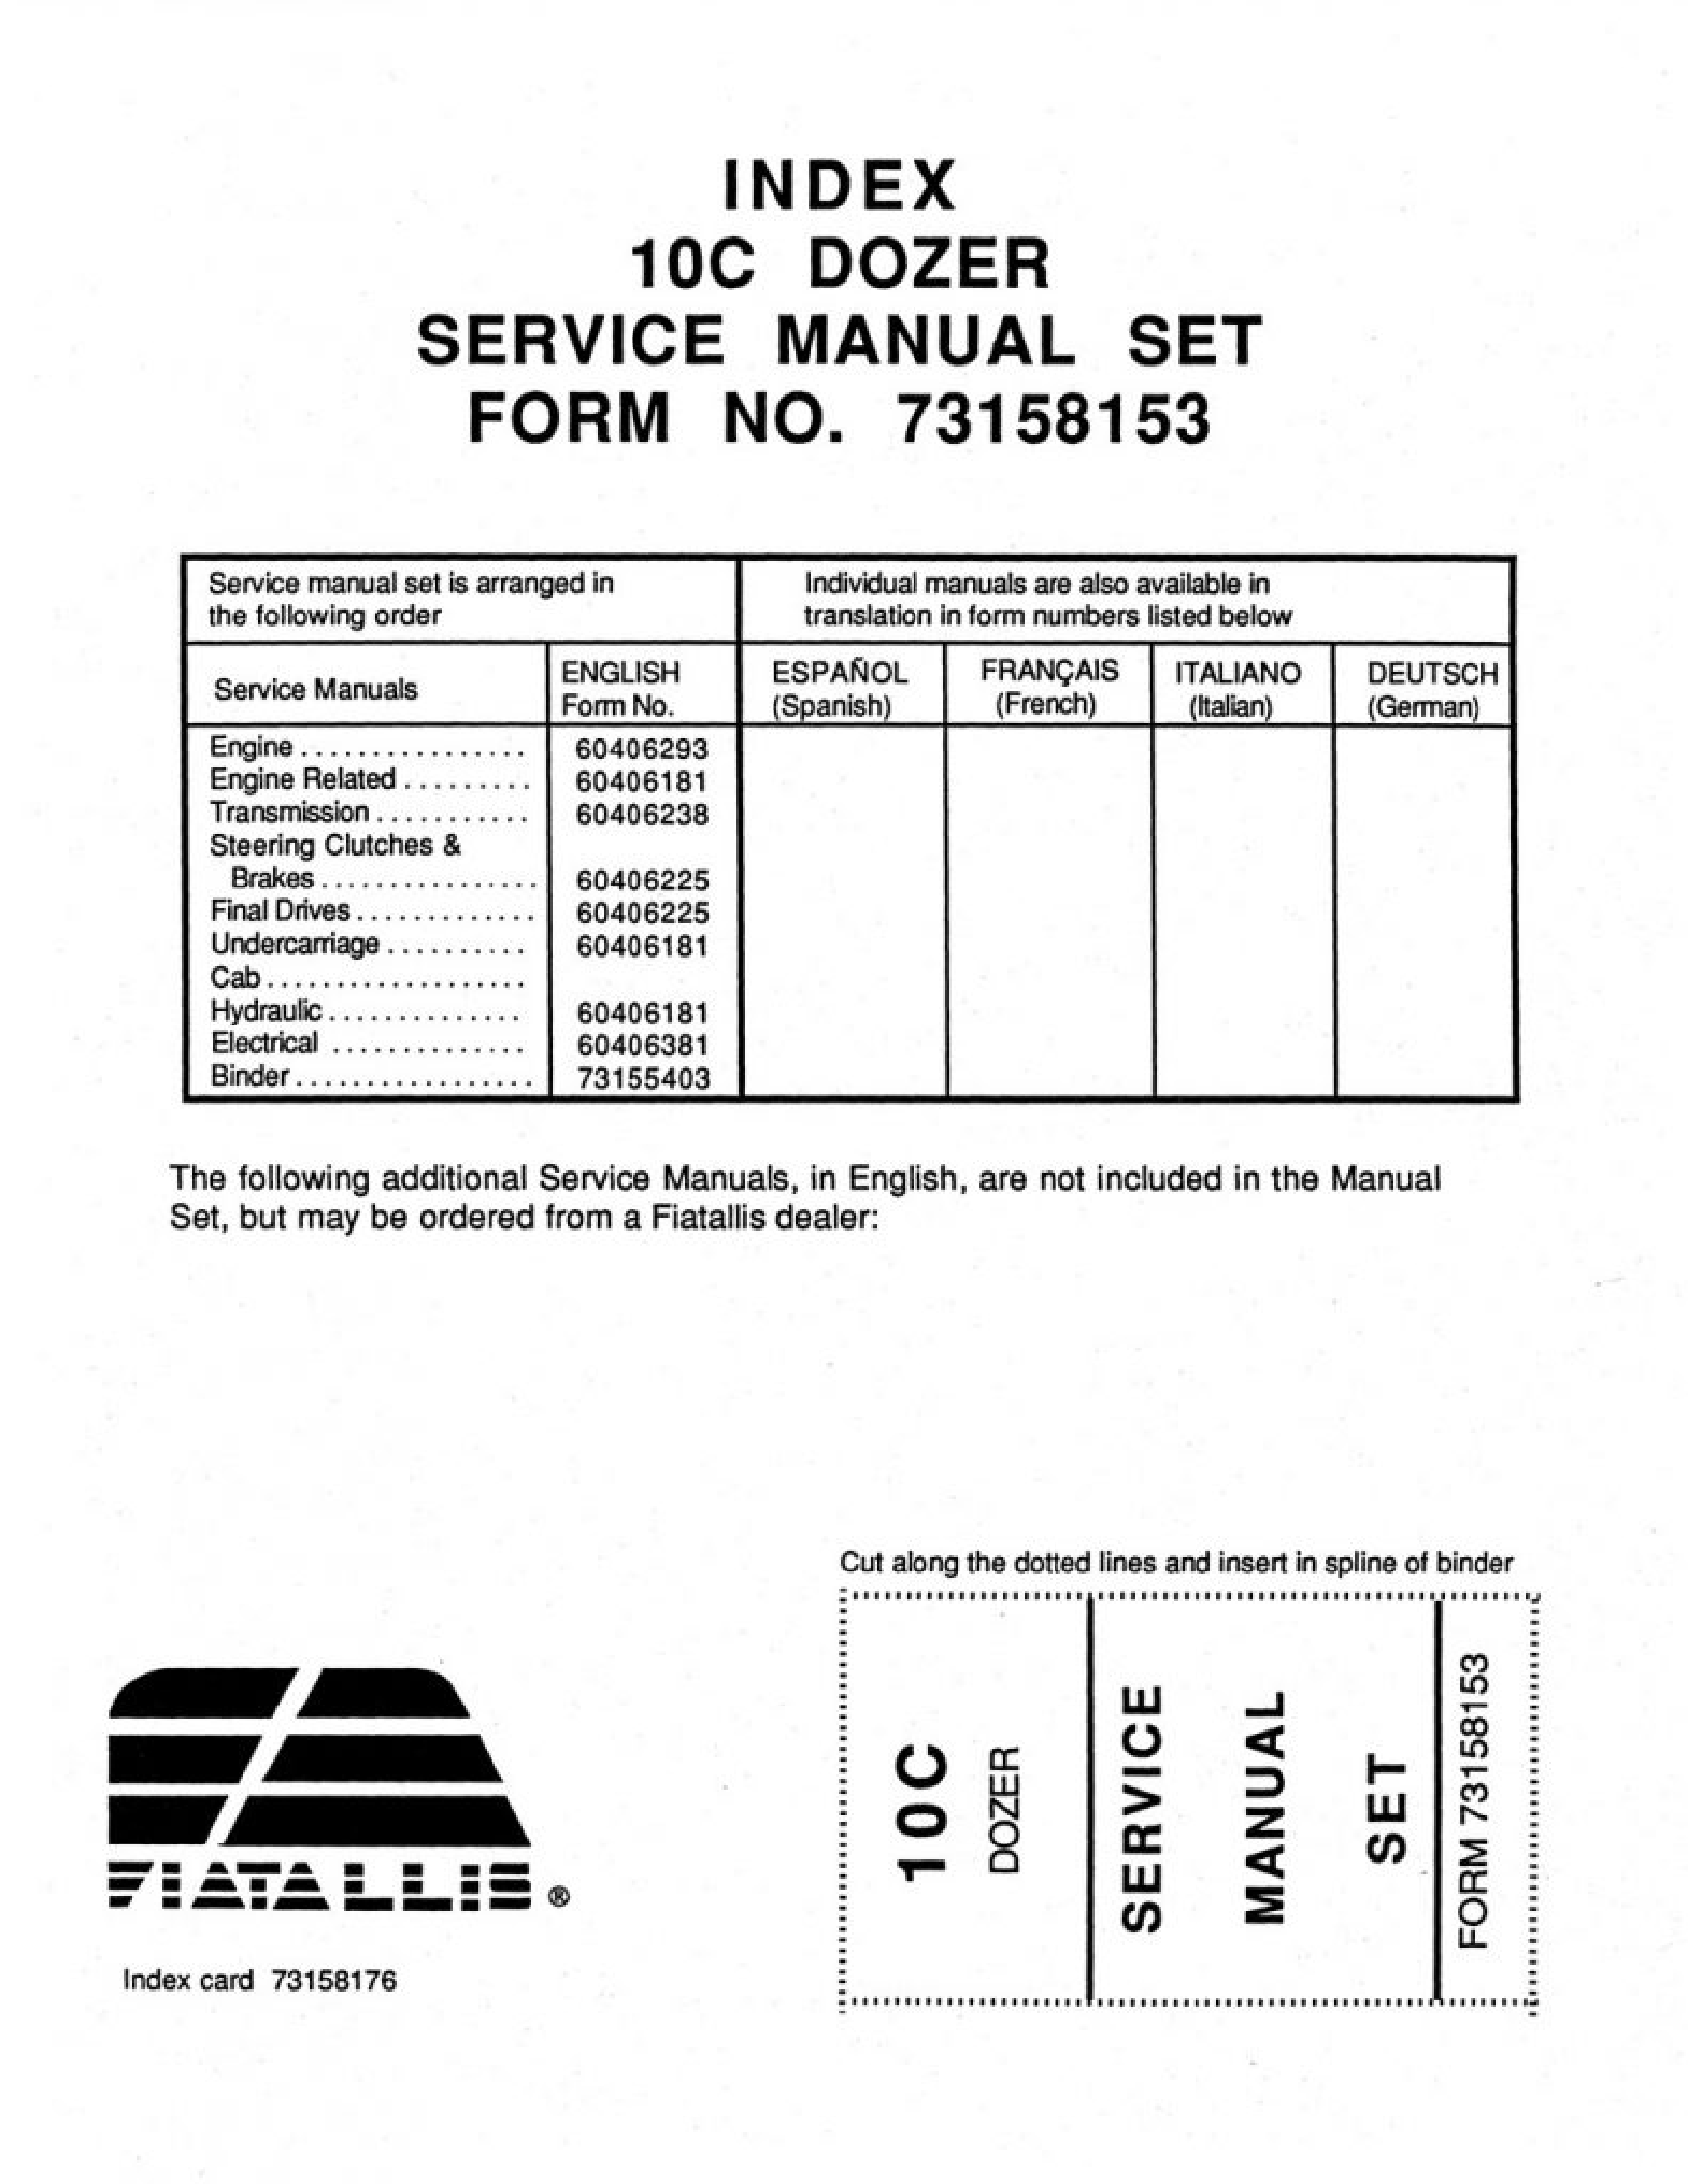 Fiat-Allis 10C Dozer manual